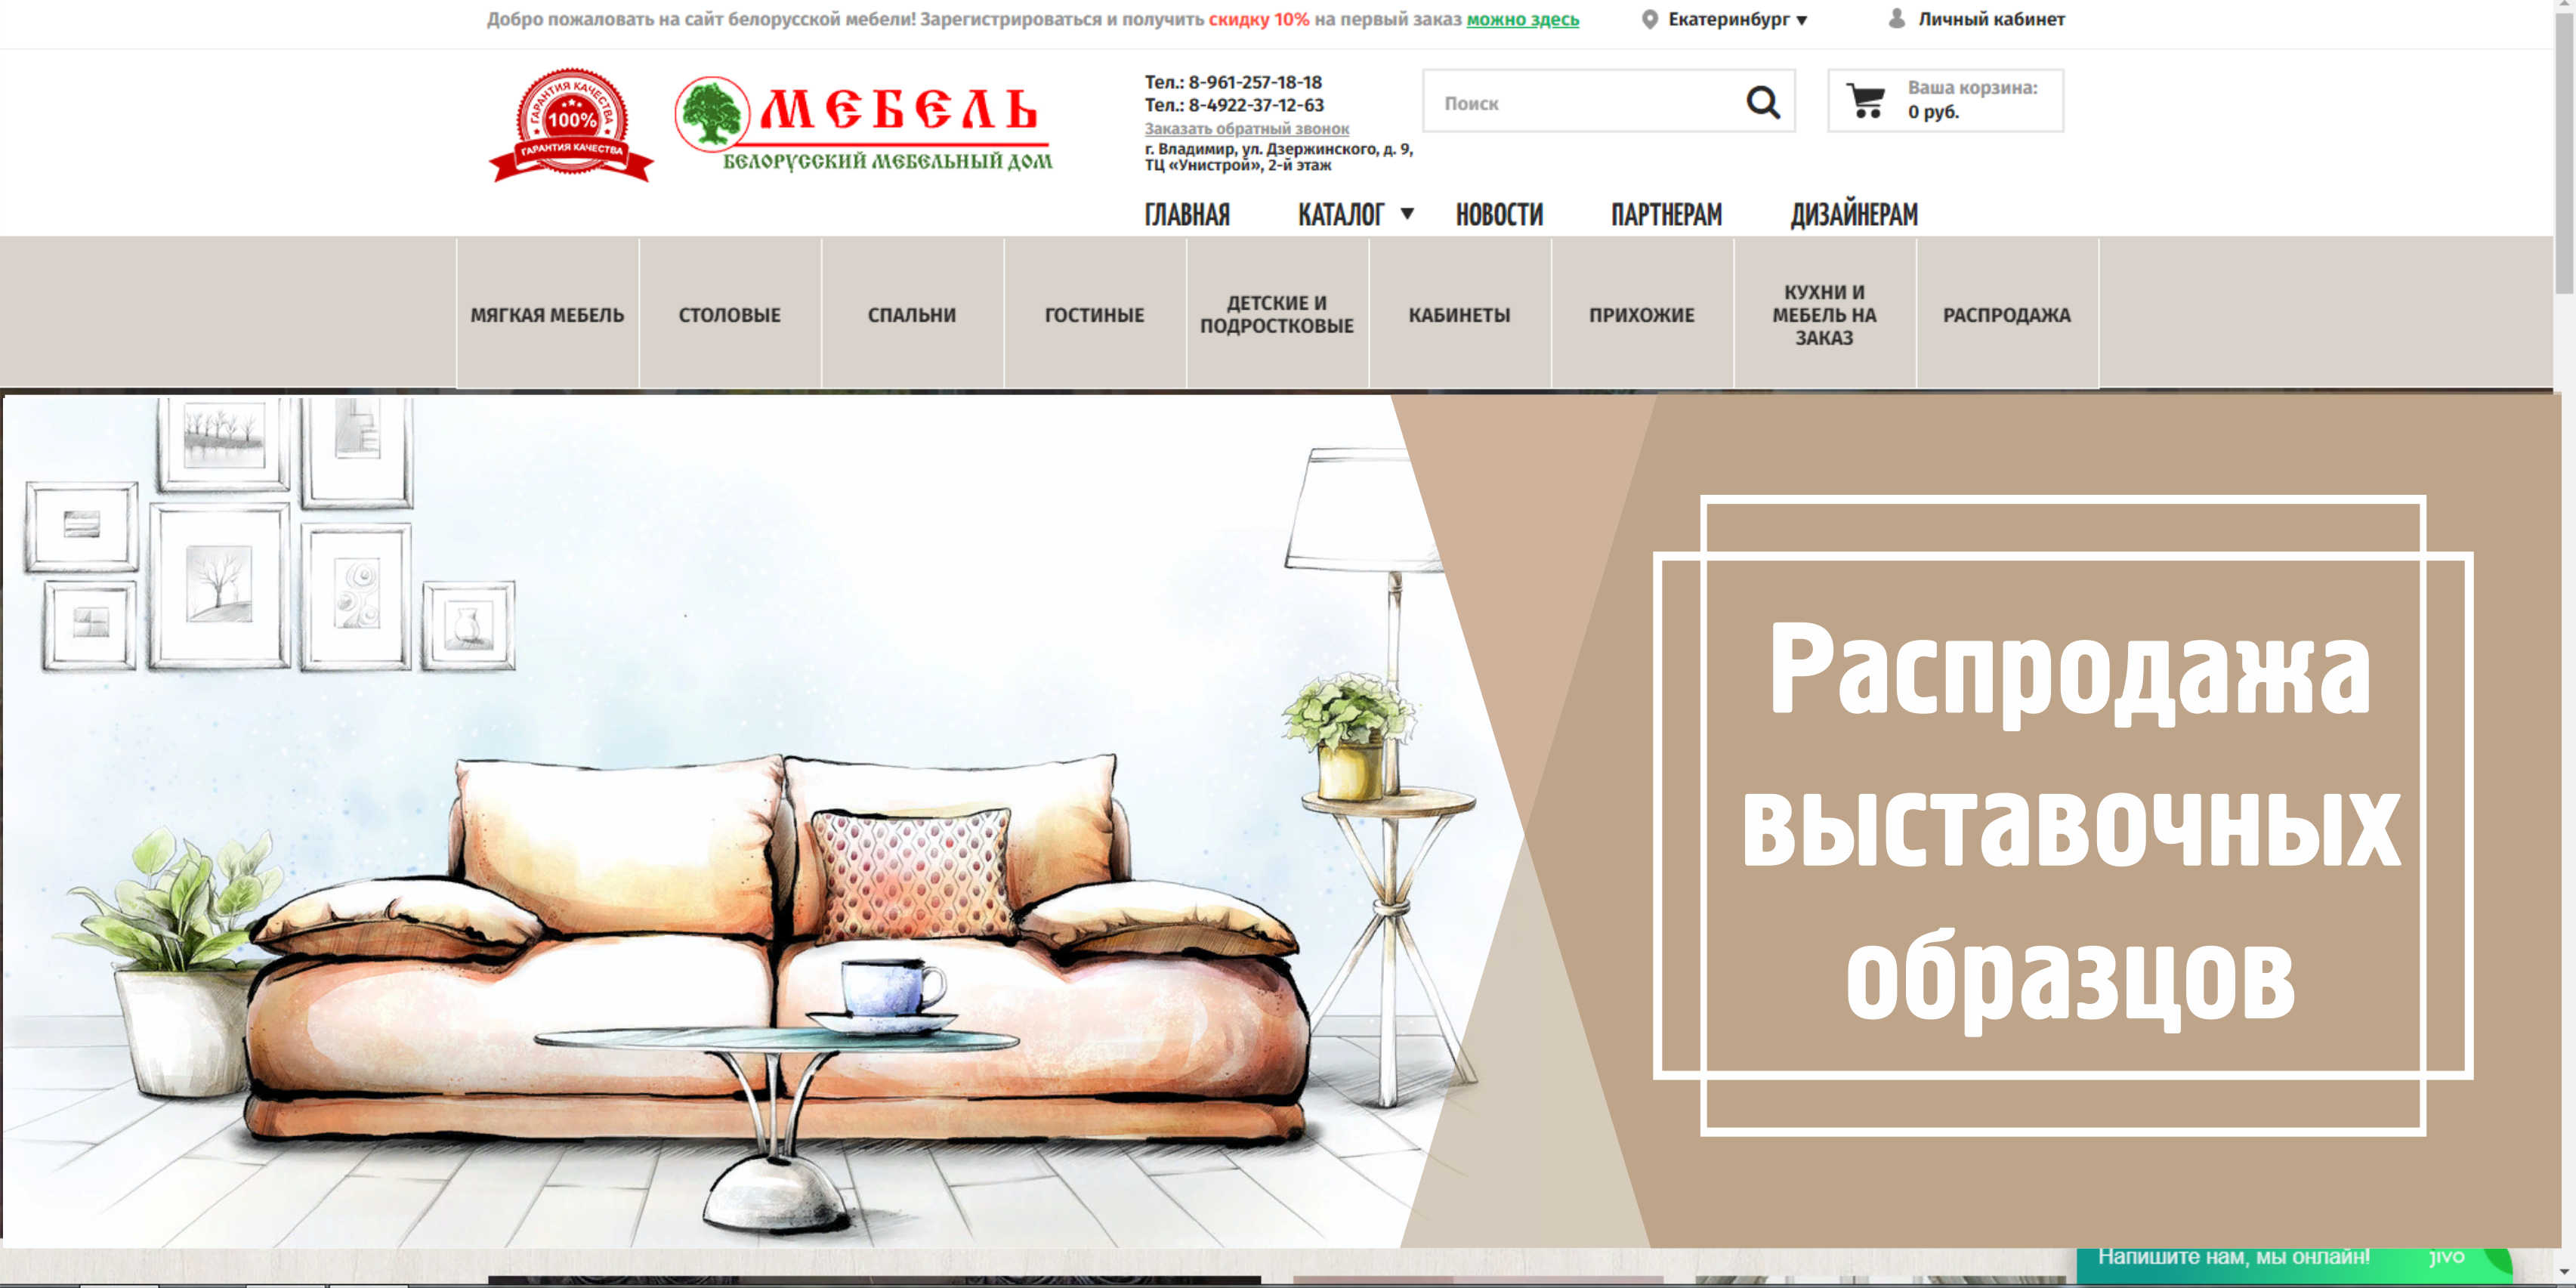 Дизайн сайта мебели. Обложка для сайта мебели. Белорусский дизайн. Мебельный сайт с моделями мебели. Ток мебель сайт